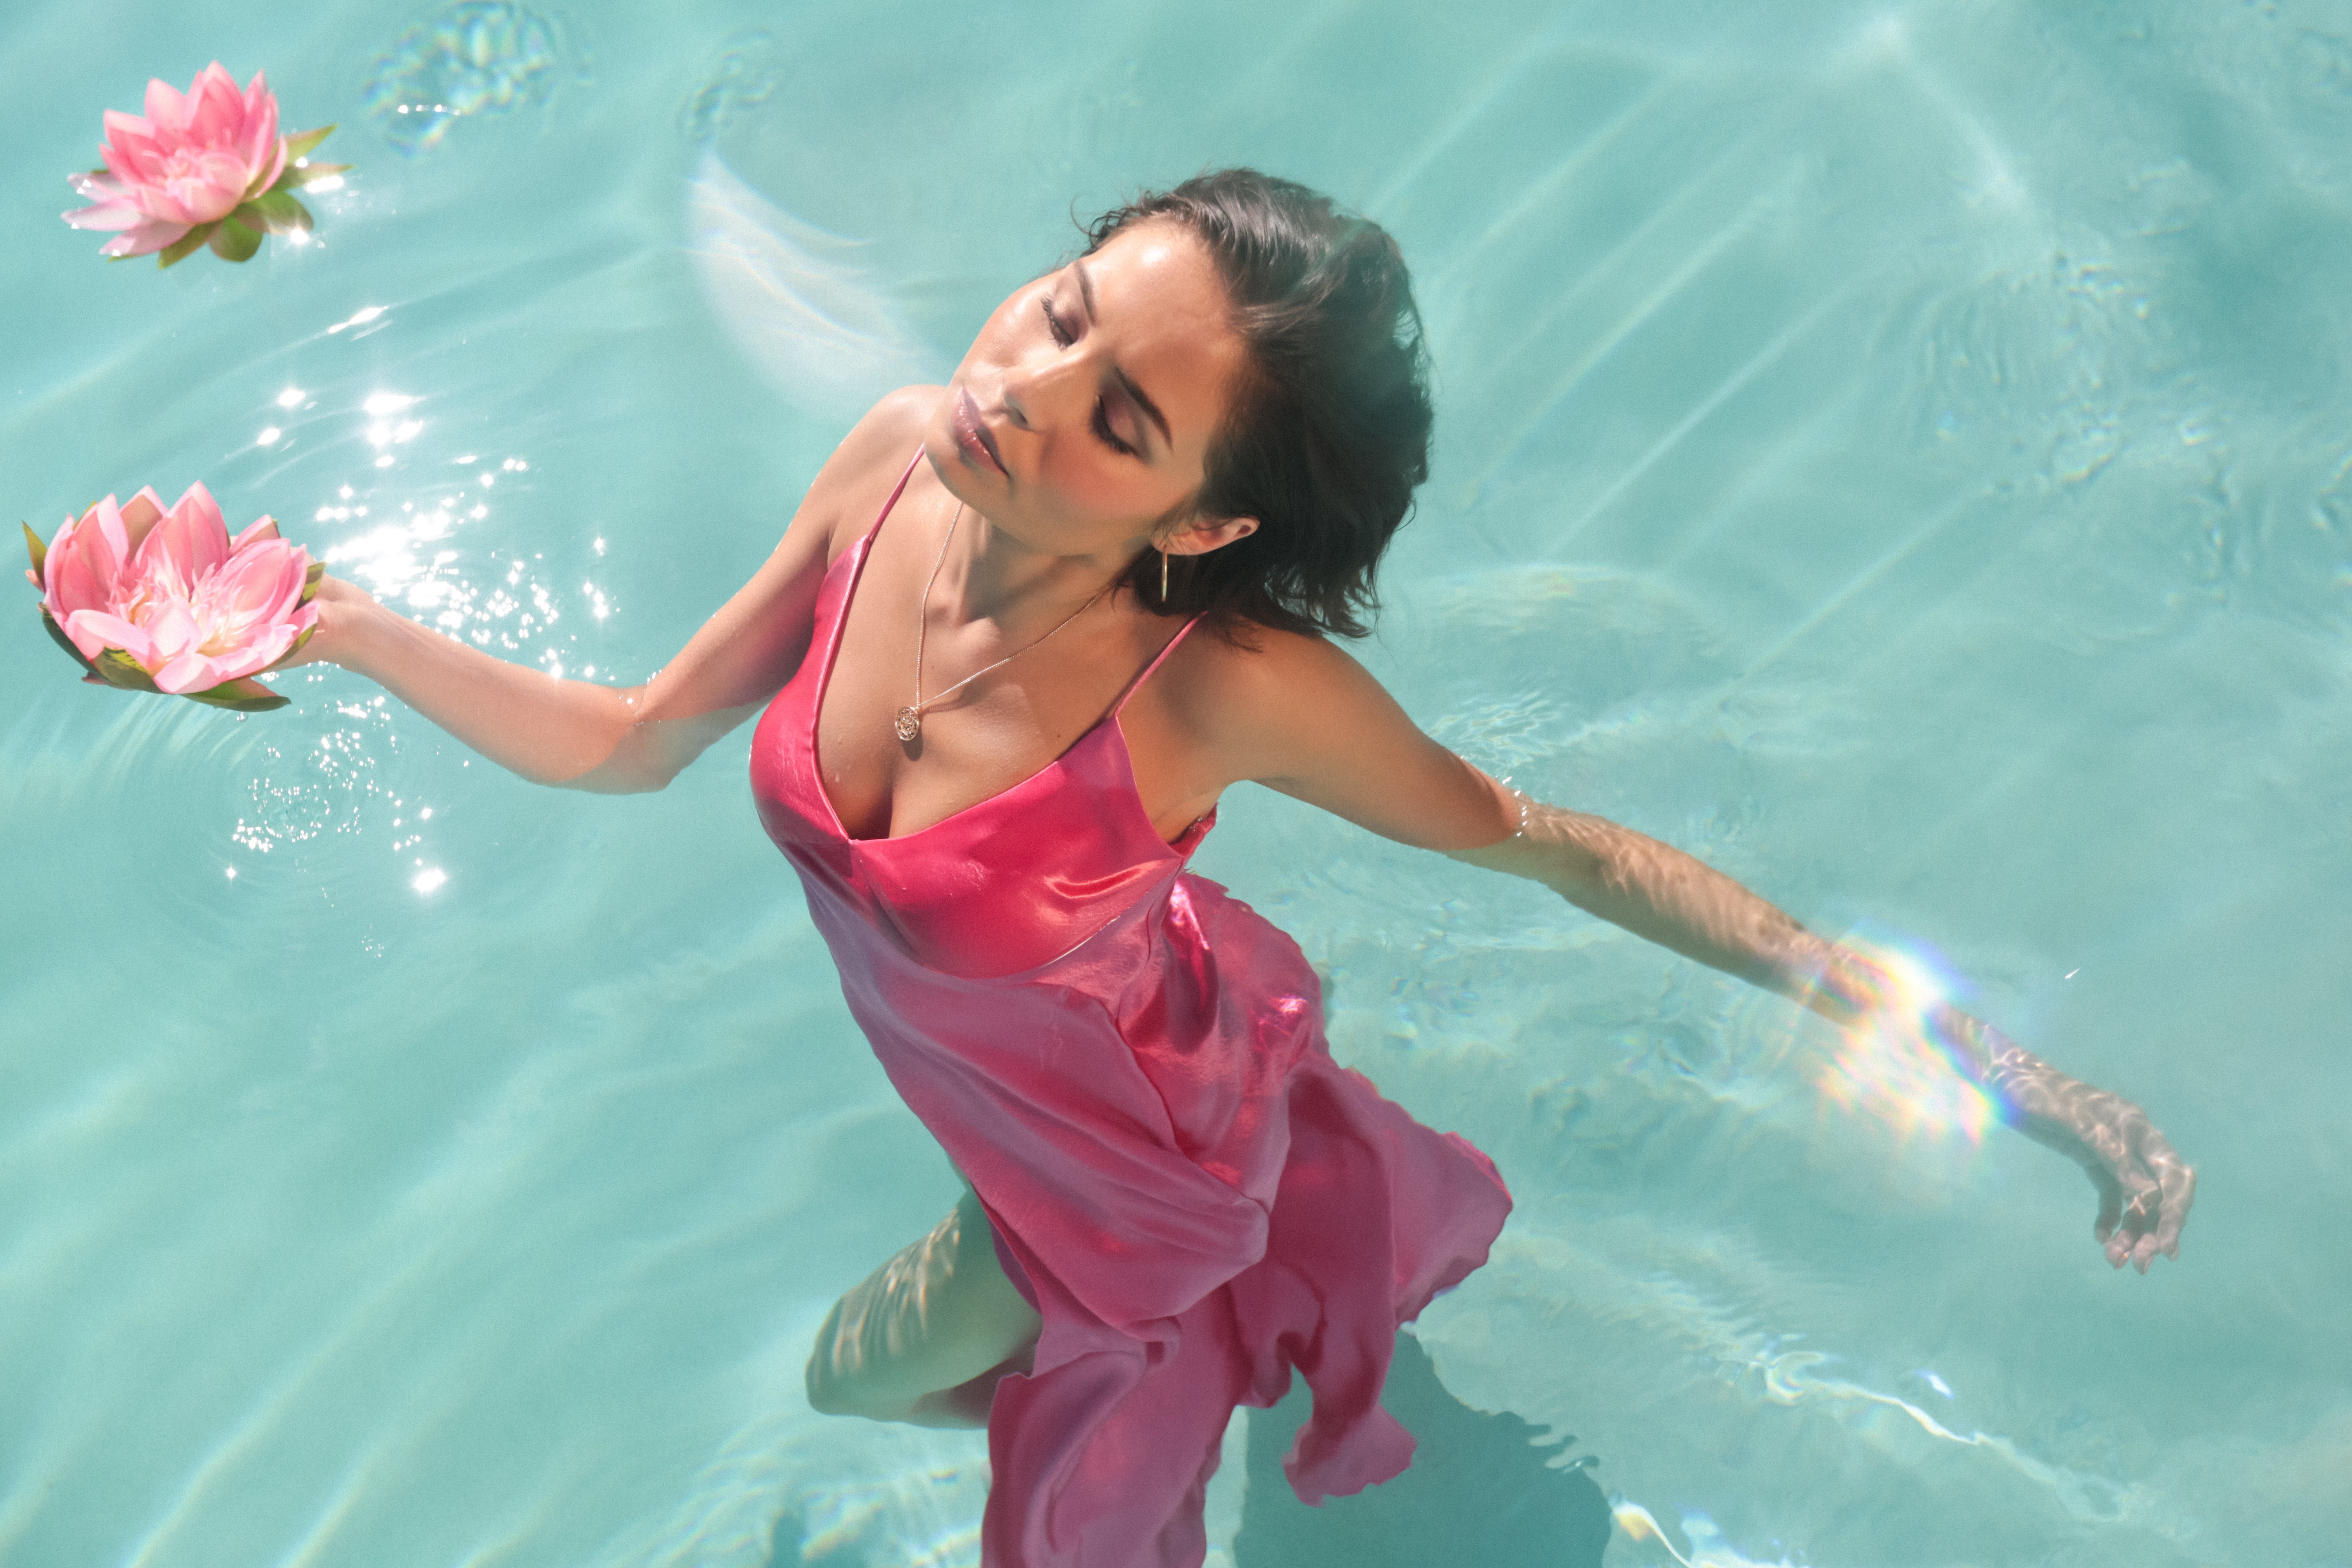 Women Singer Nina Nesbitt Lotus Flowers Swimming Pool In Water Top View Pink Dress Dress Black Hair  5358x3572